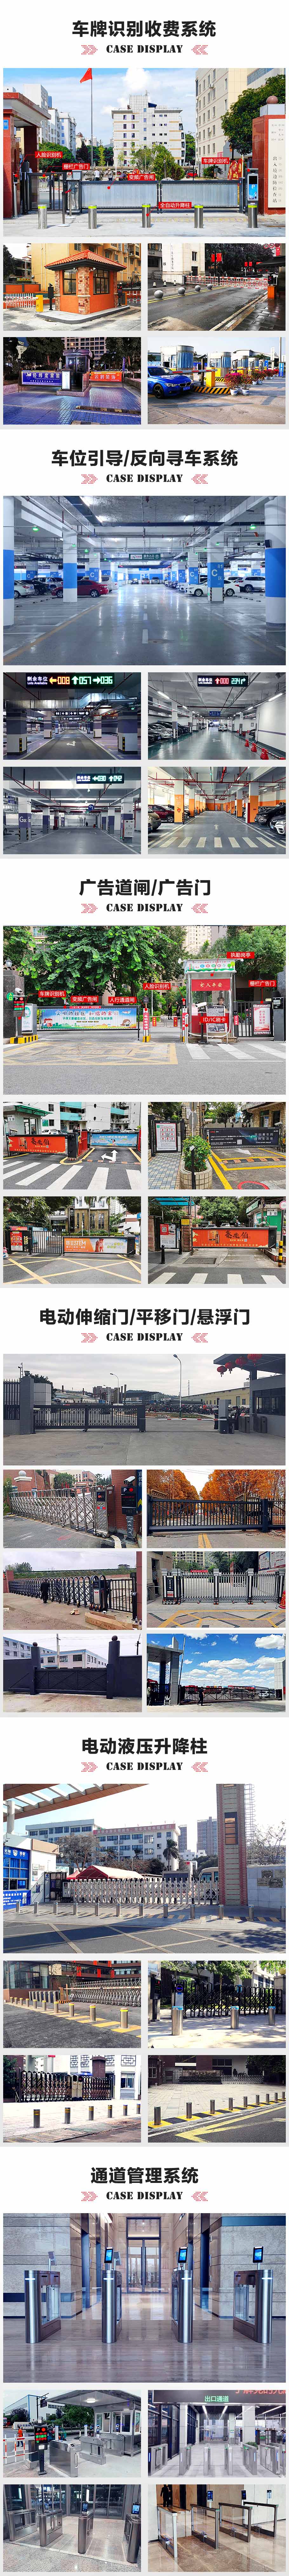 广州白云国际机场P5停车场车牌识别系统